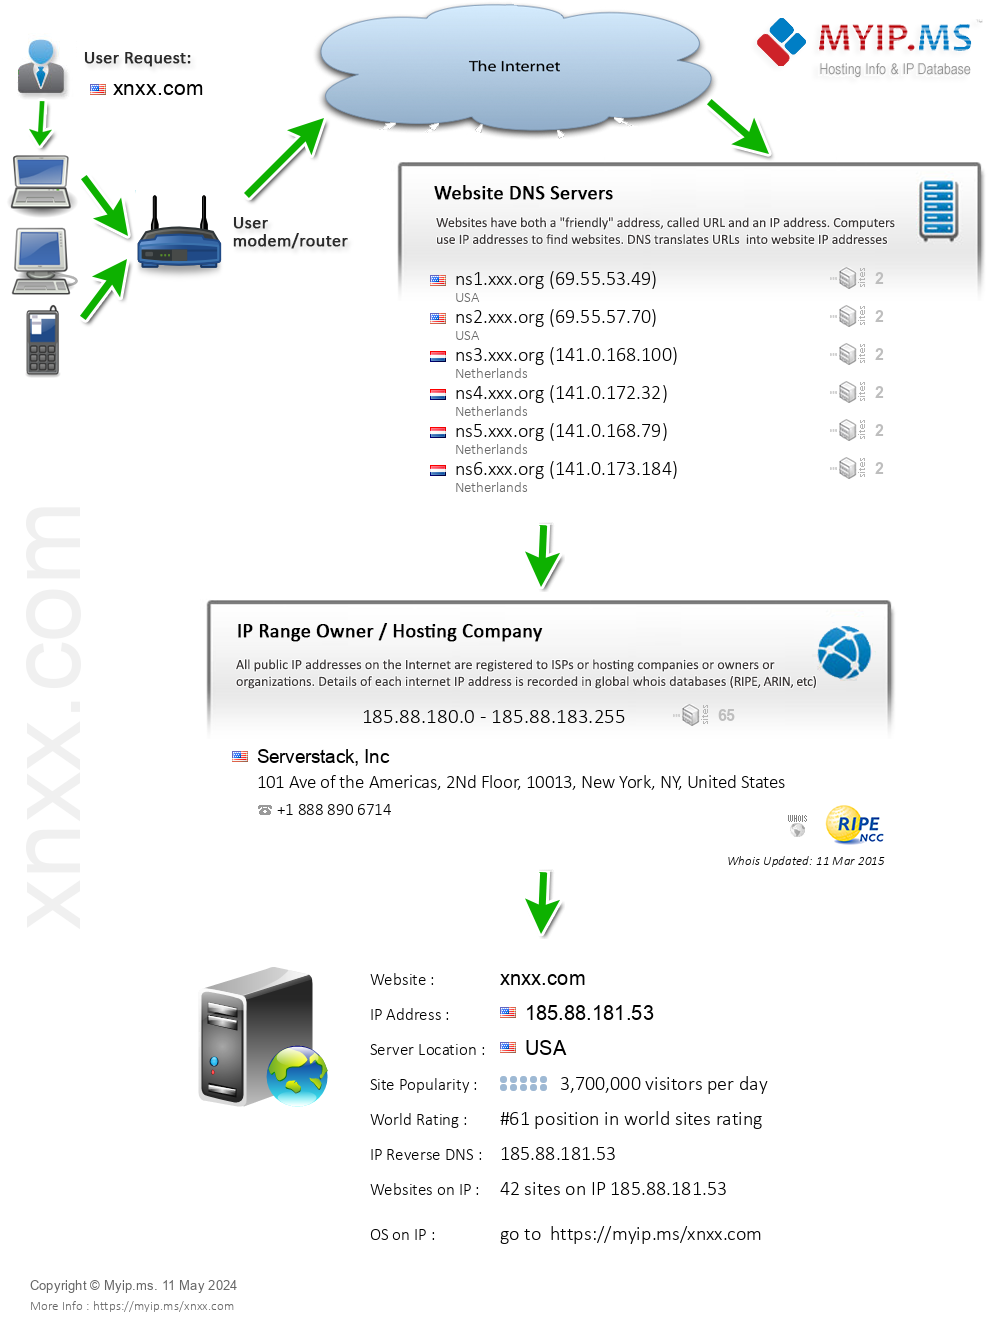 Xnxx.com - Website Hosting Visual IP Diagram